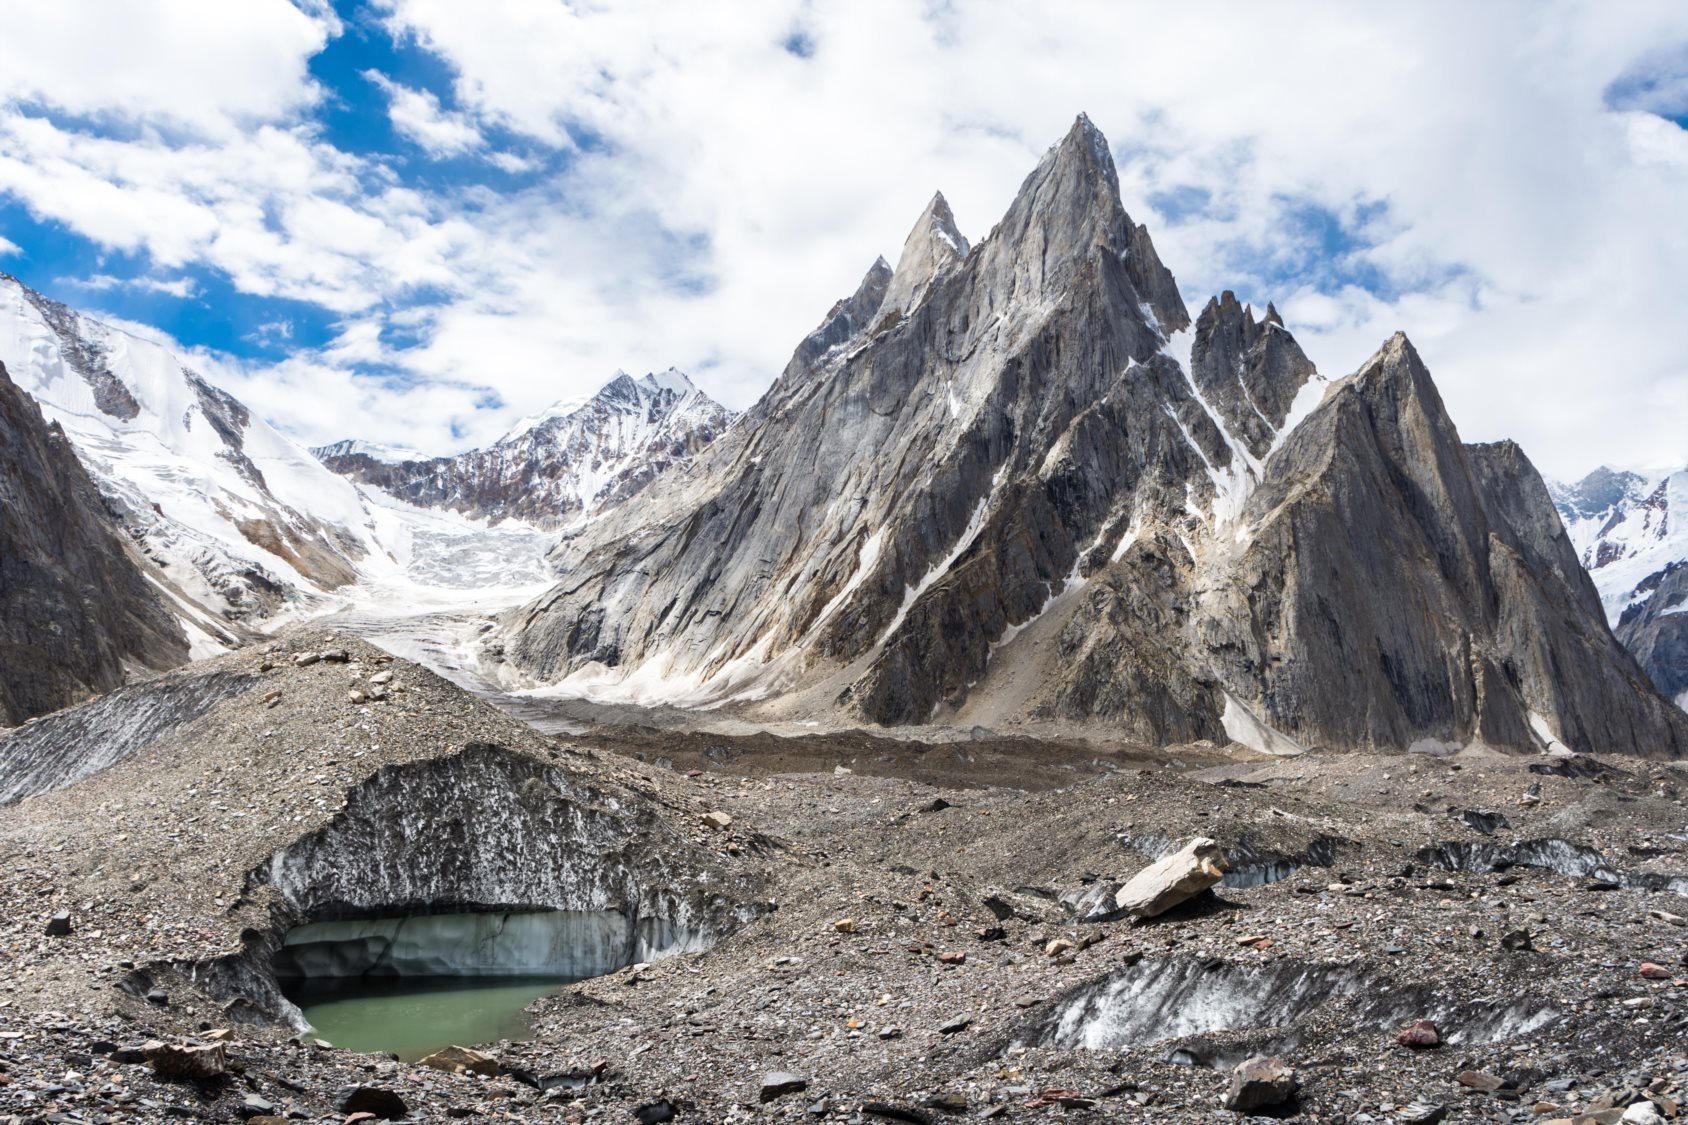 <p>Nuding pyramids and Nuding glacier, Baltoro glacier, Karakoram, Pakistan [image: Alamy]</p>